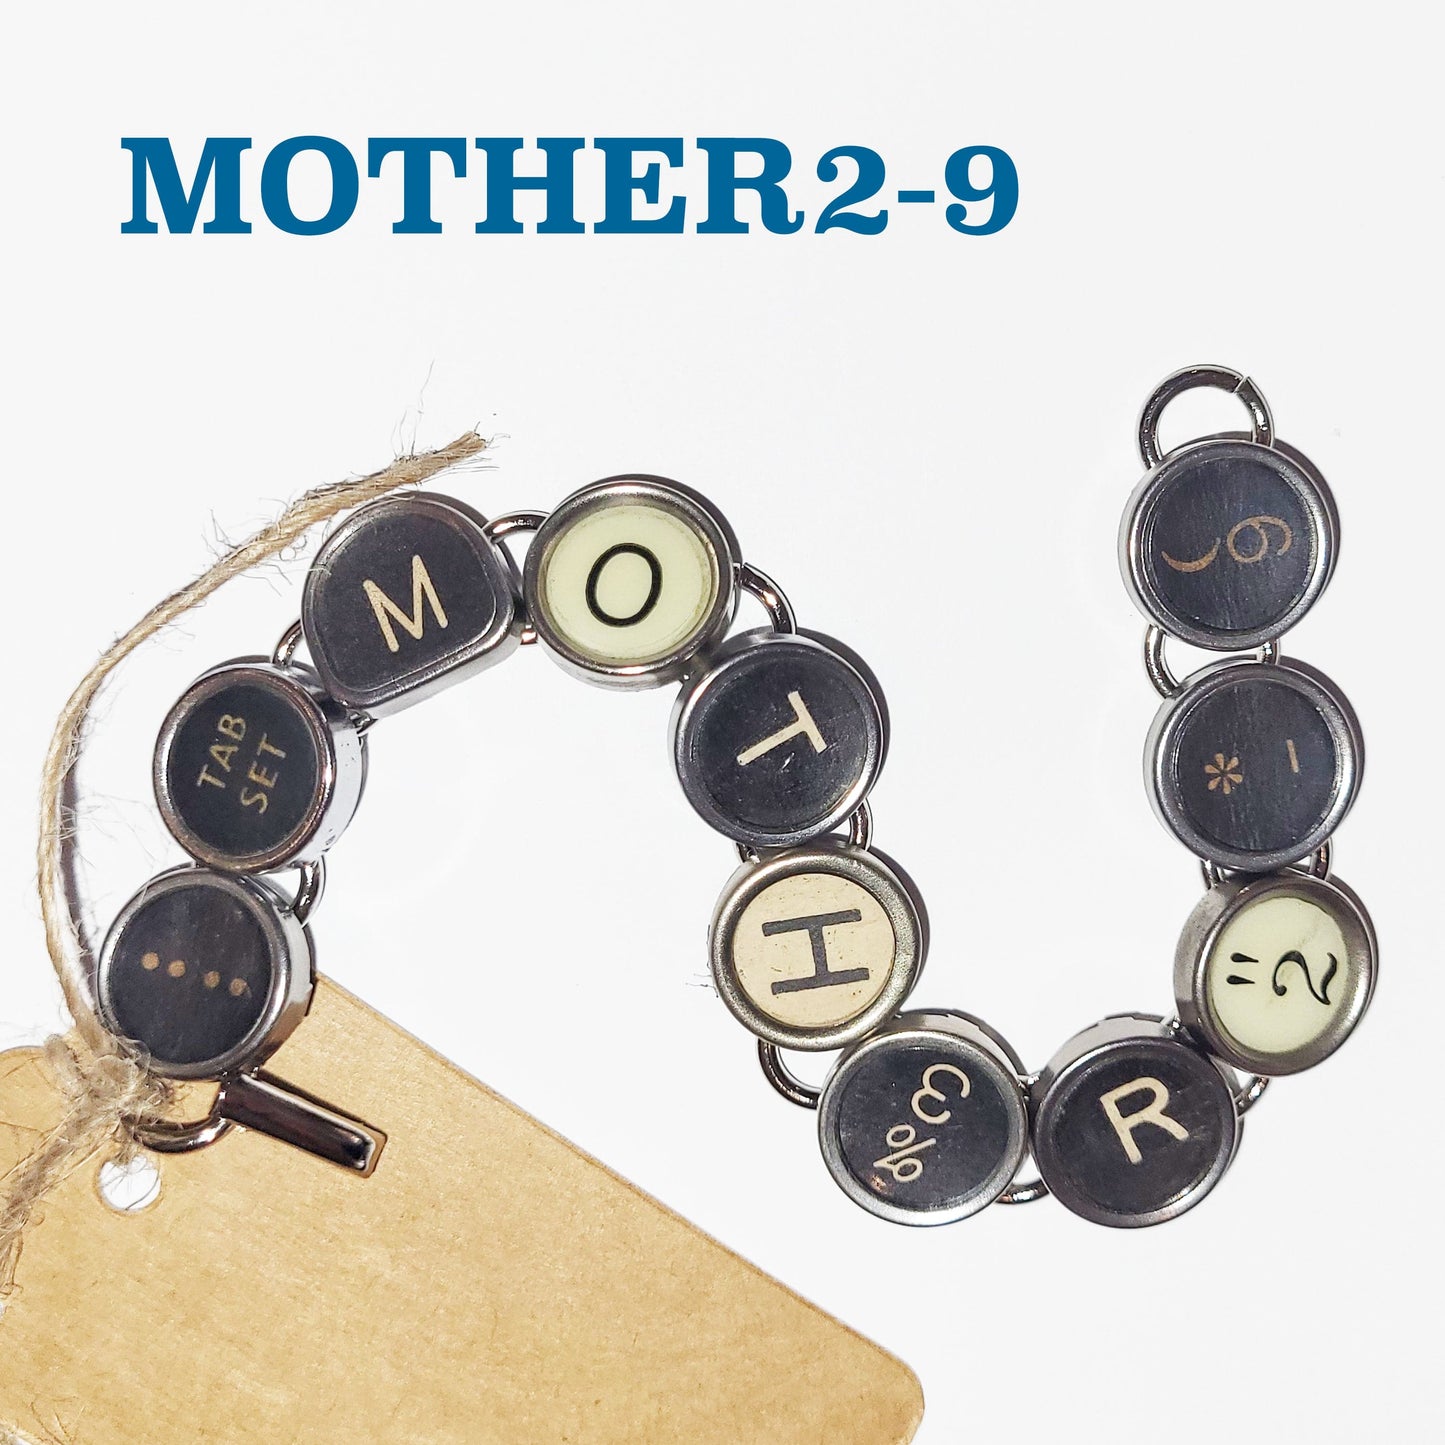 Typewriter Key Bracelet - MOTHER'S DAY